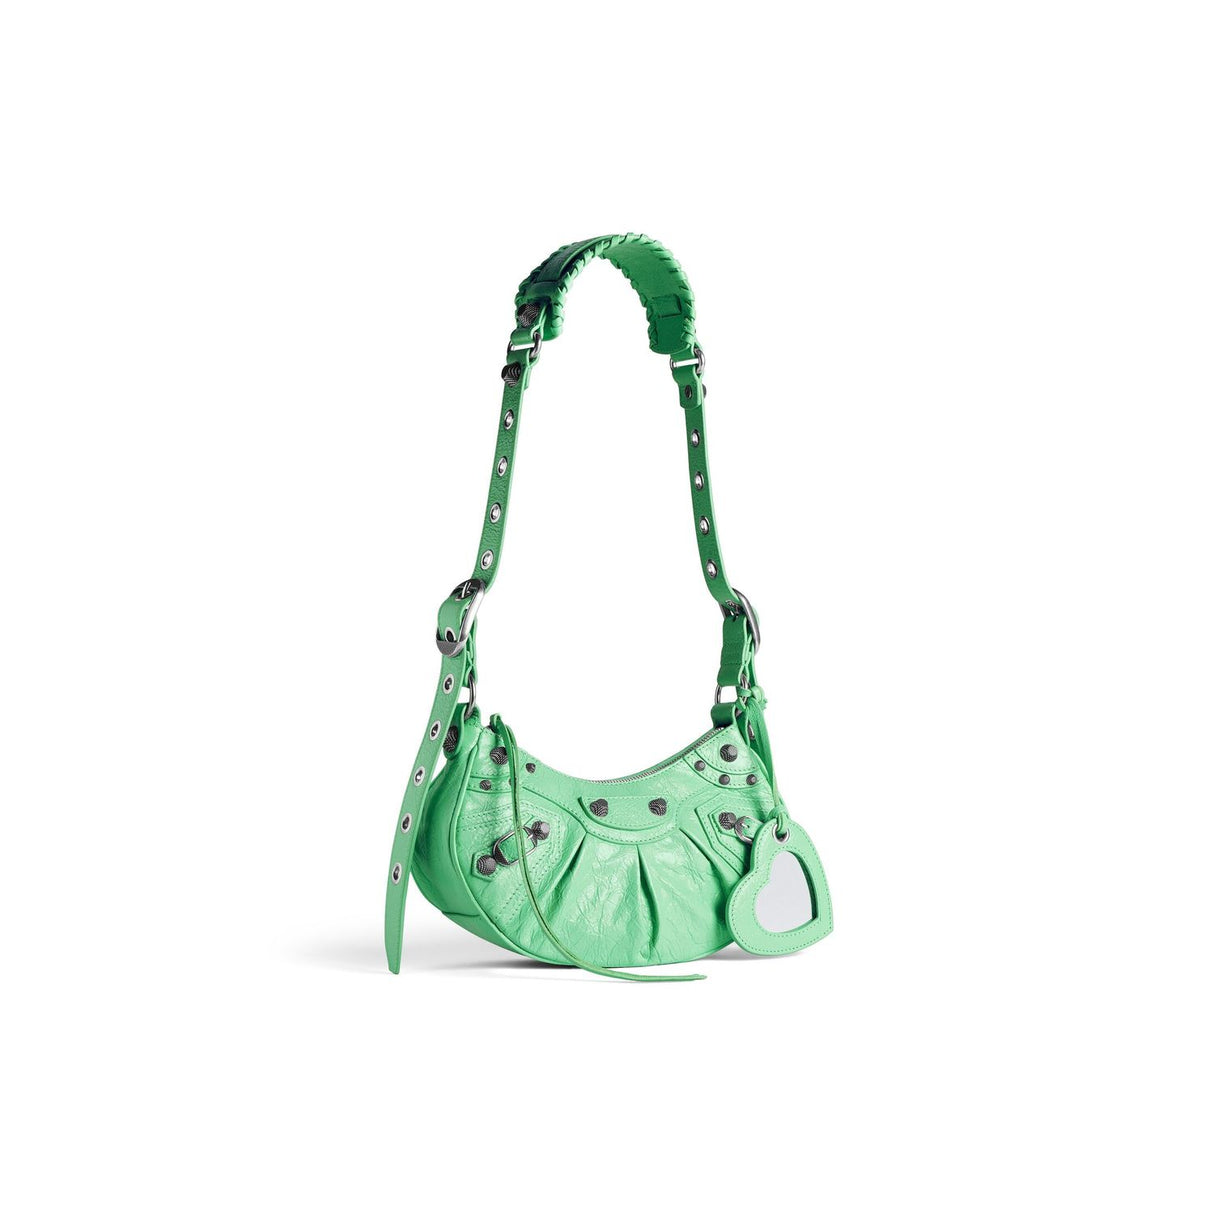 BALENCIAGA Adjustable Shoulder Strap Handbag in Light Green Lambskin for Women